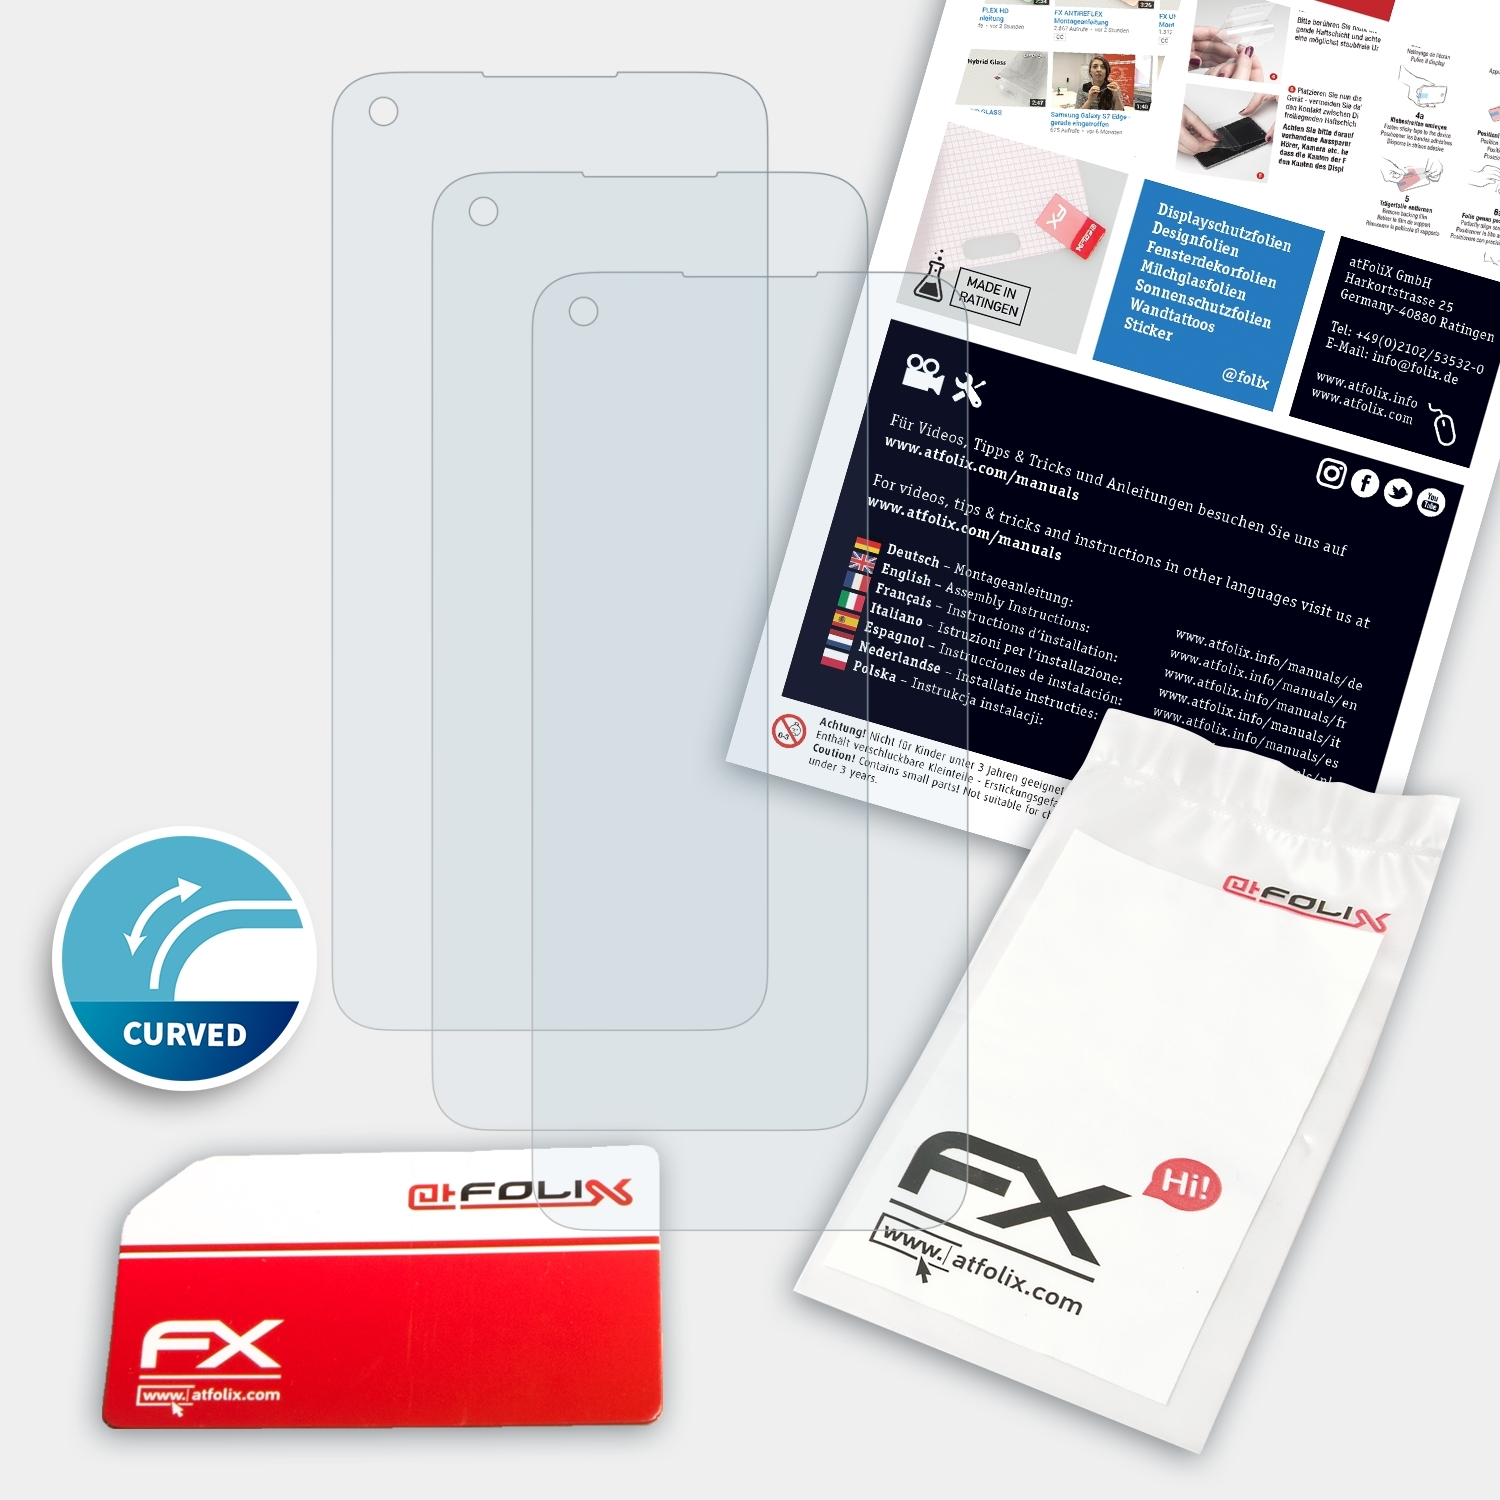 FX-ActiFleX Displayschutz(für Nord OnePlus N100) ATFOLIX 3x